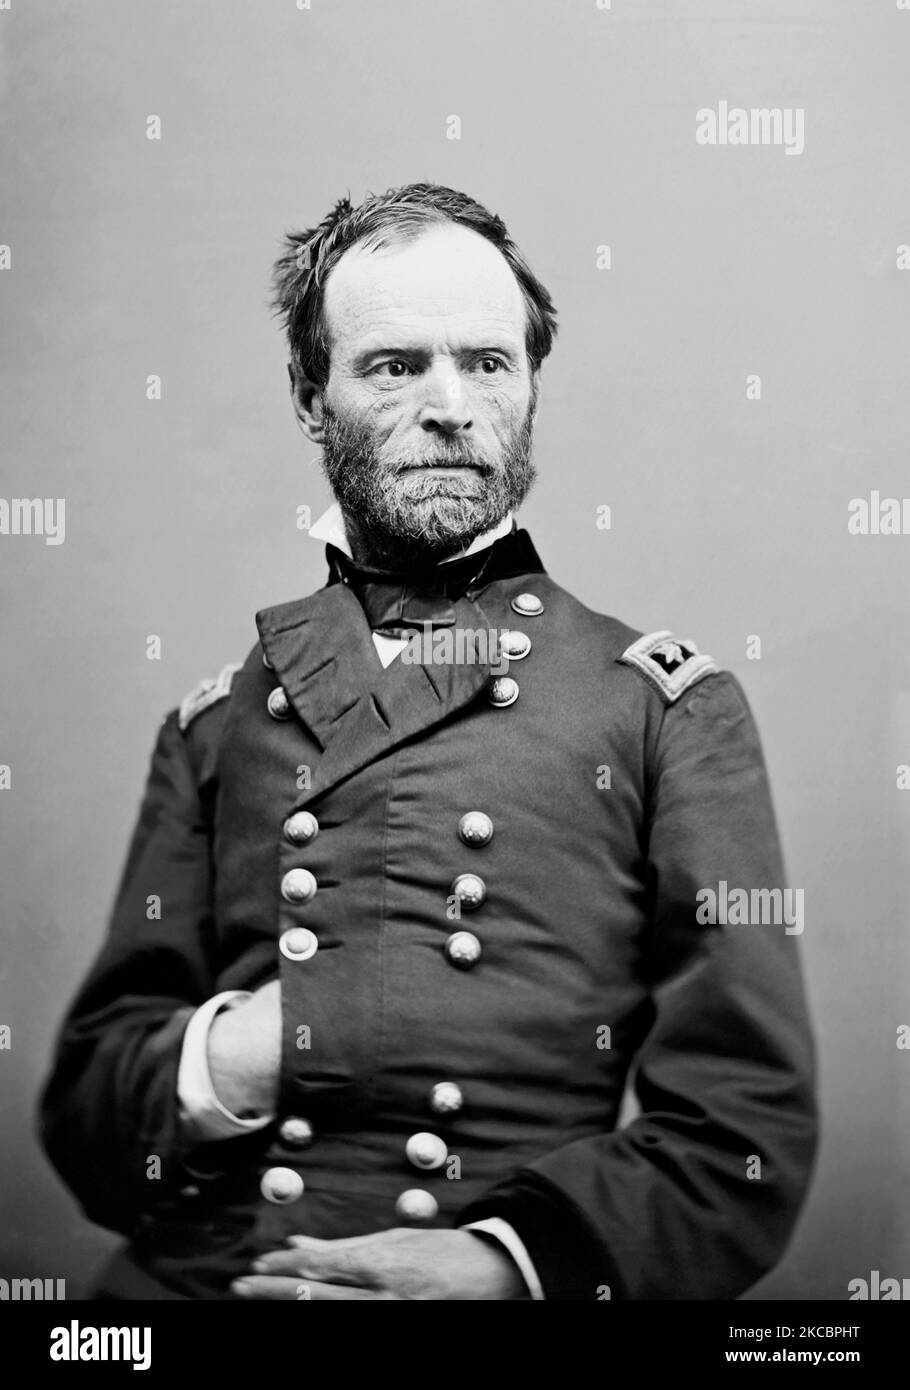 Porträt von William Tecumseh Sherman, der als General in der Union Army diente. Stockfoto